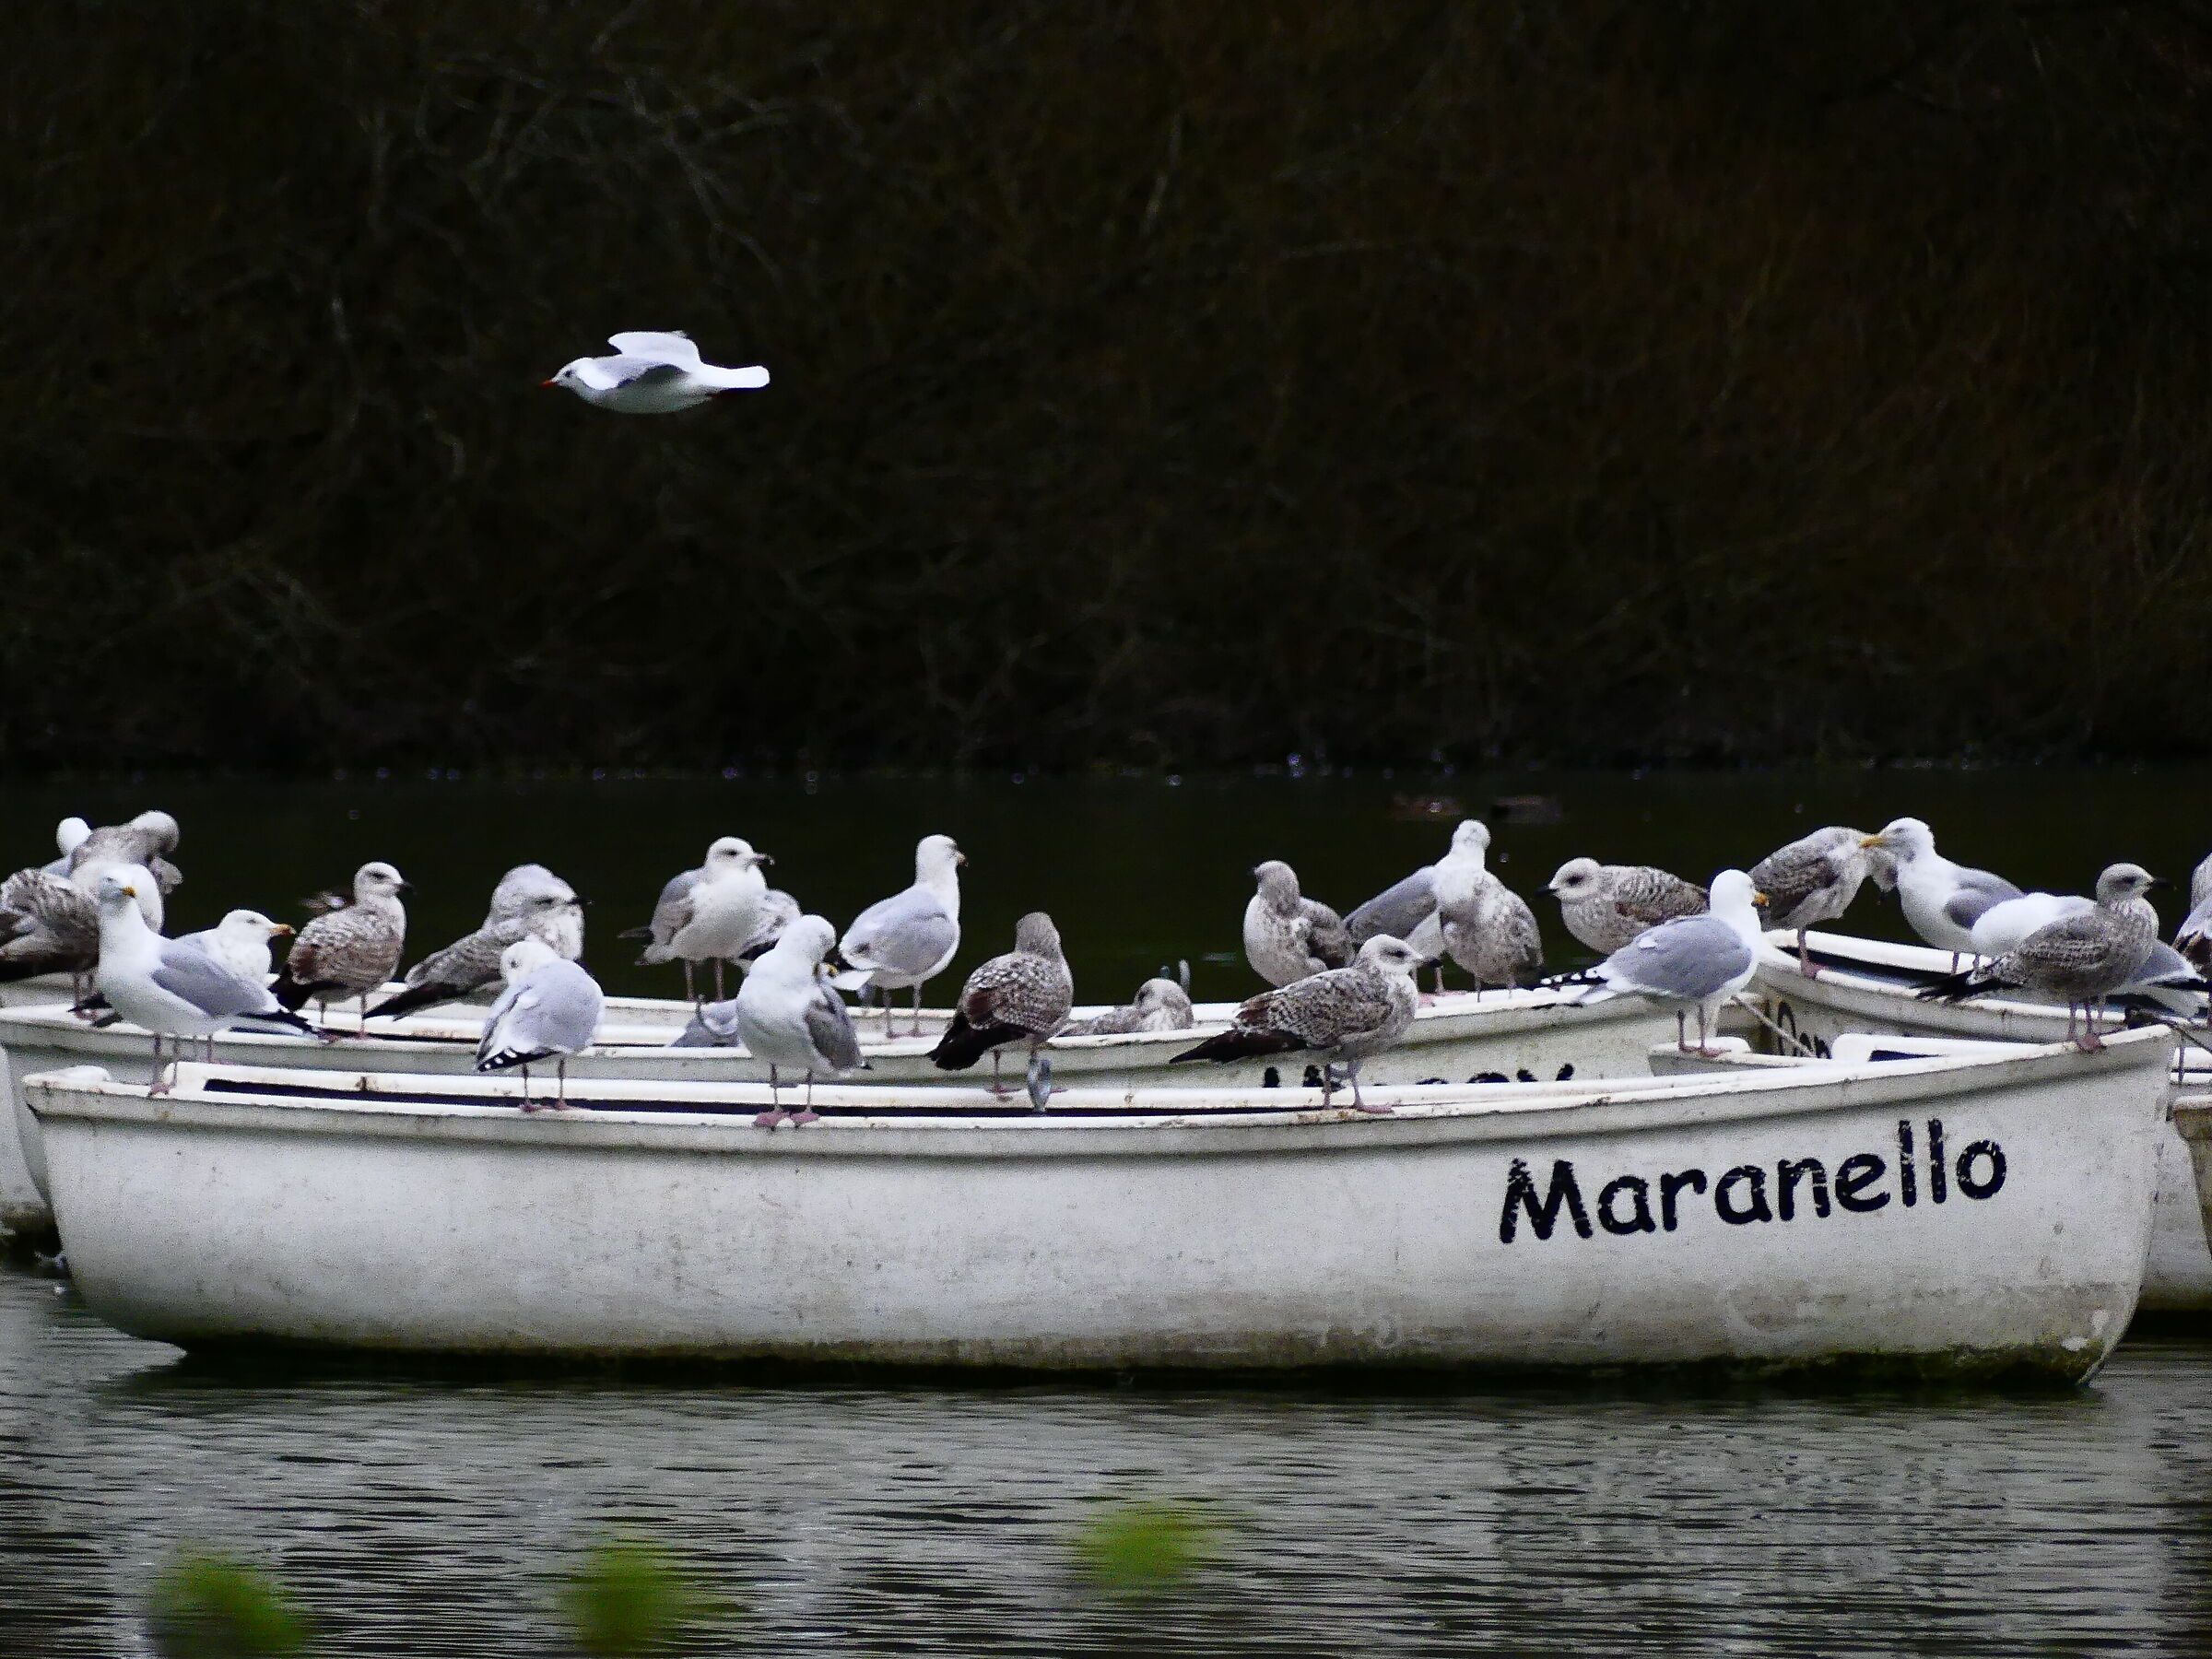 Tutti in barca a Maranello...